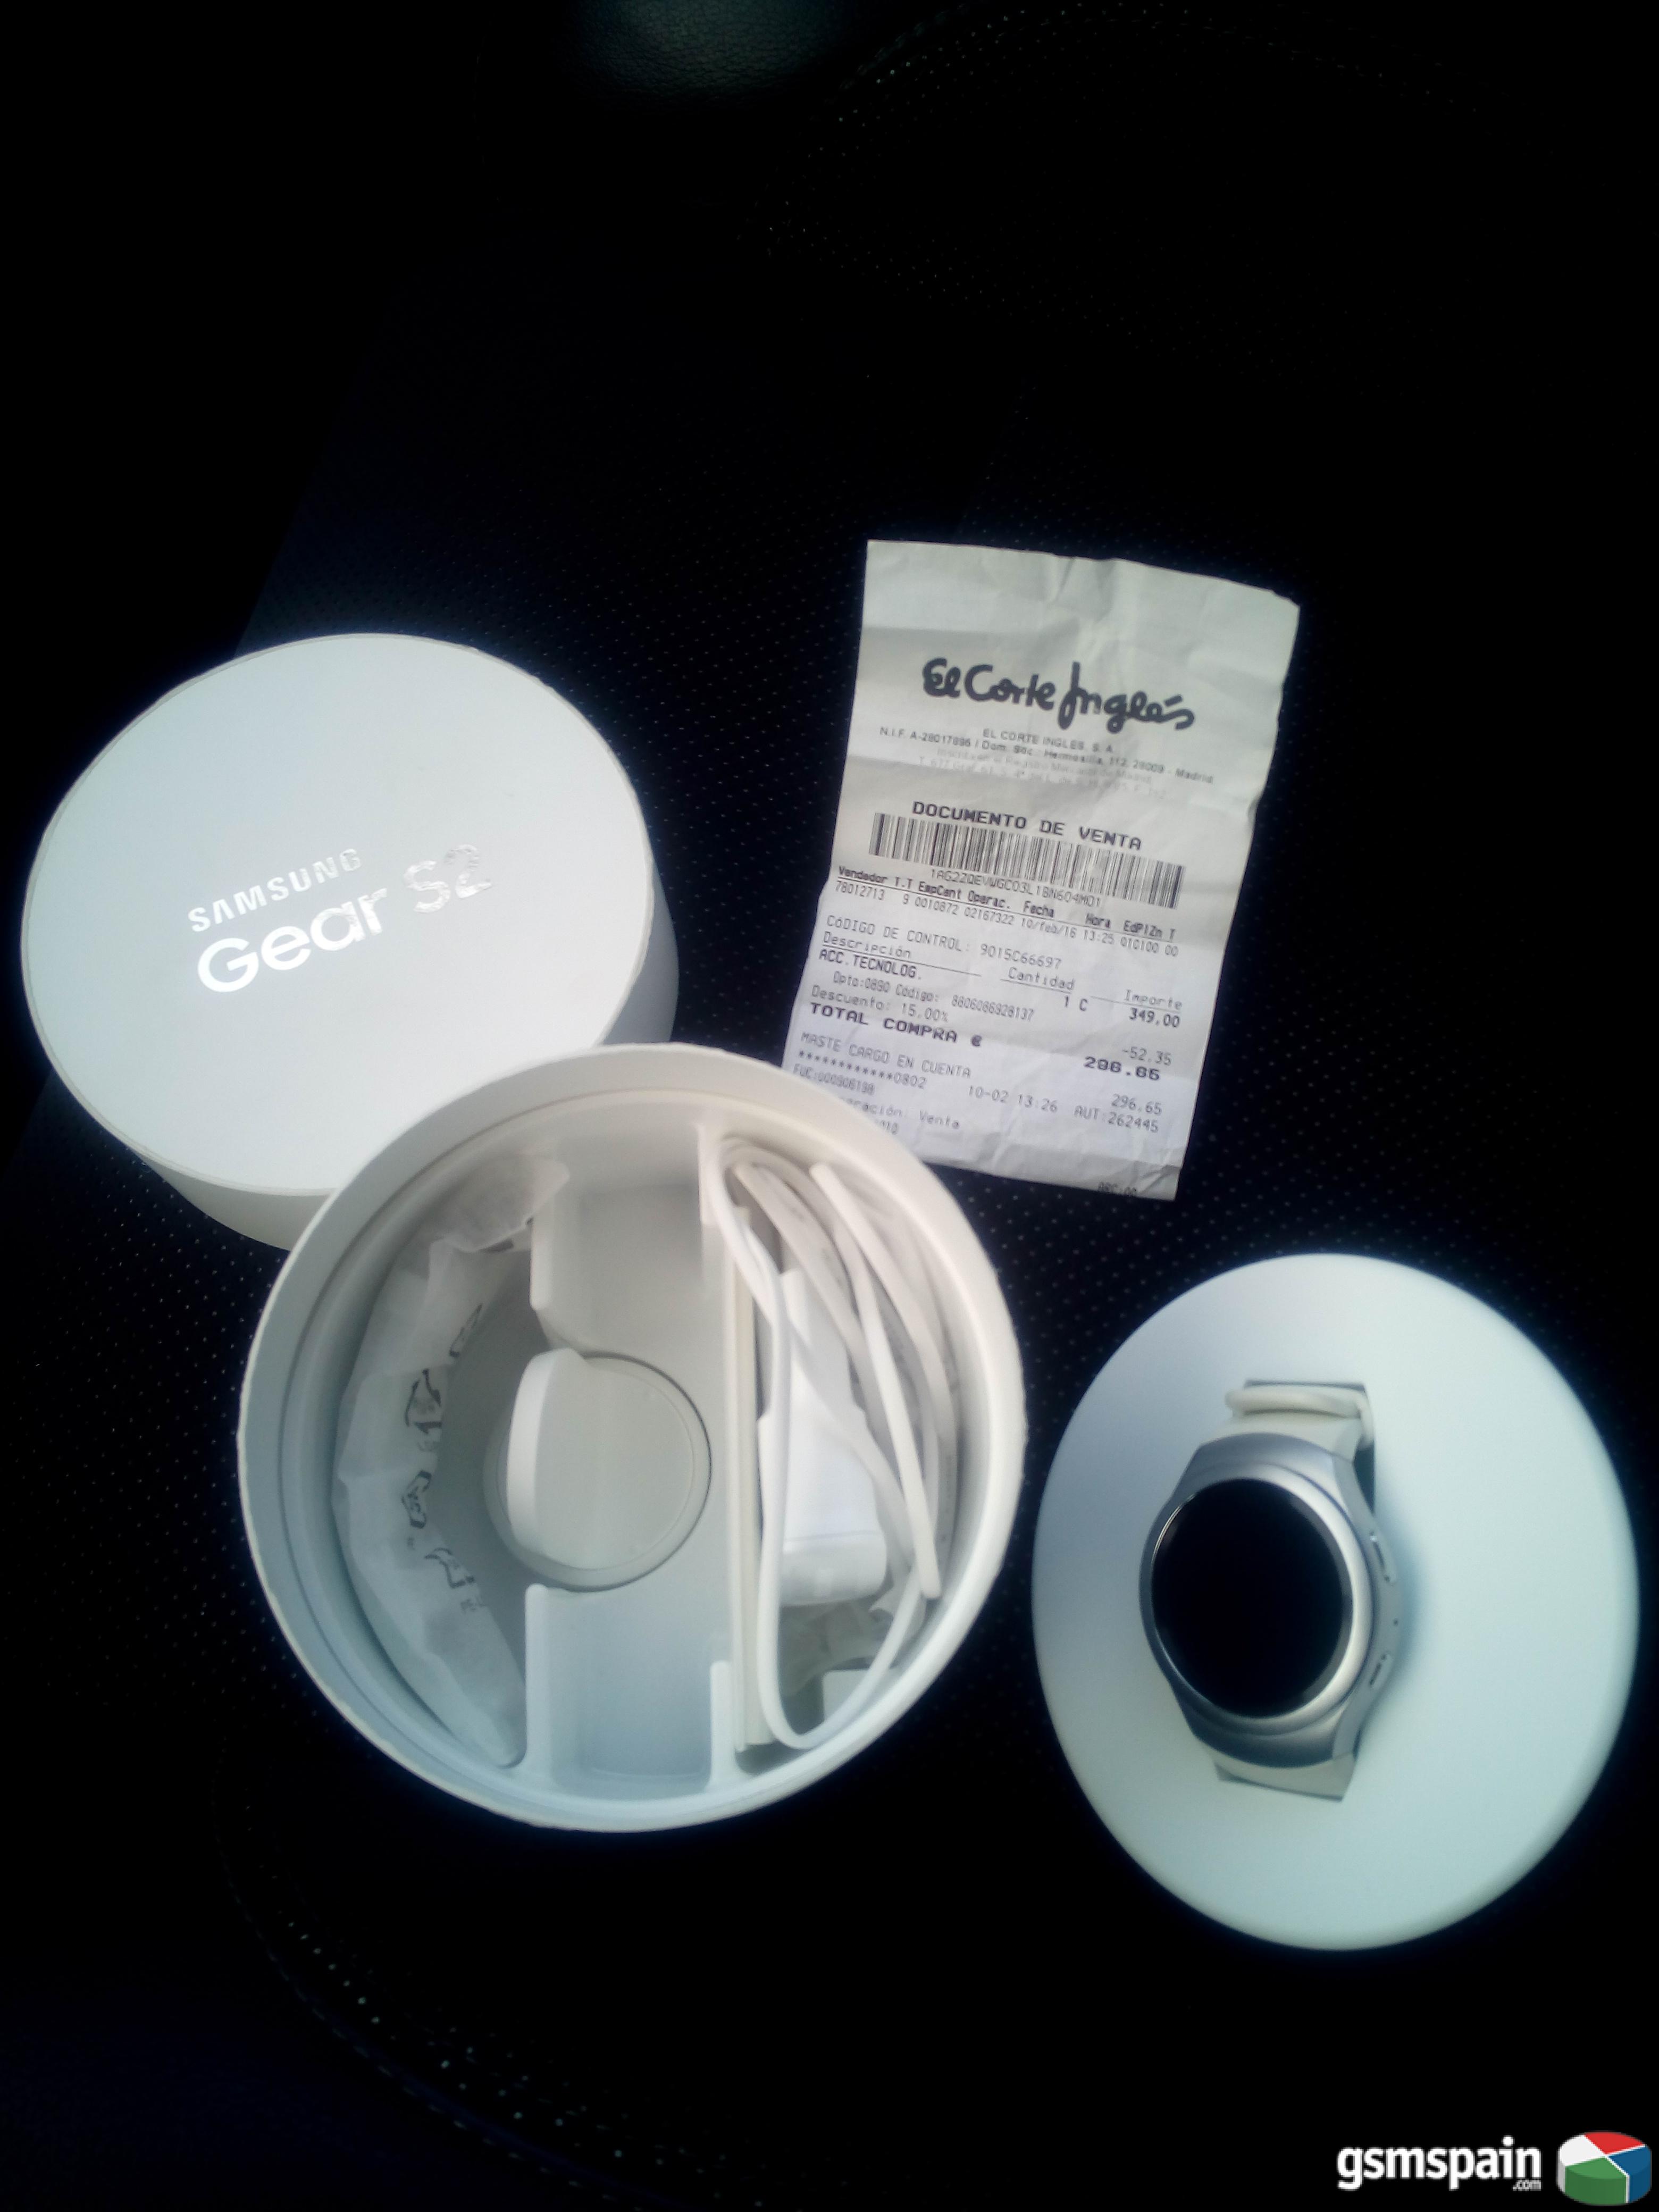 [VENDO] Samsung Galaxy Gear S2 blanco, usado y factura del corte ingles